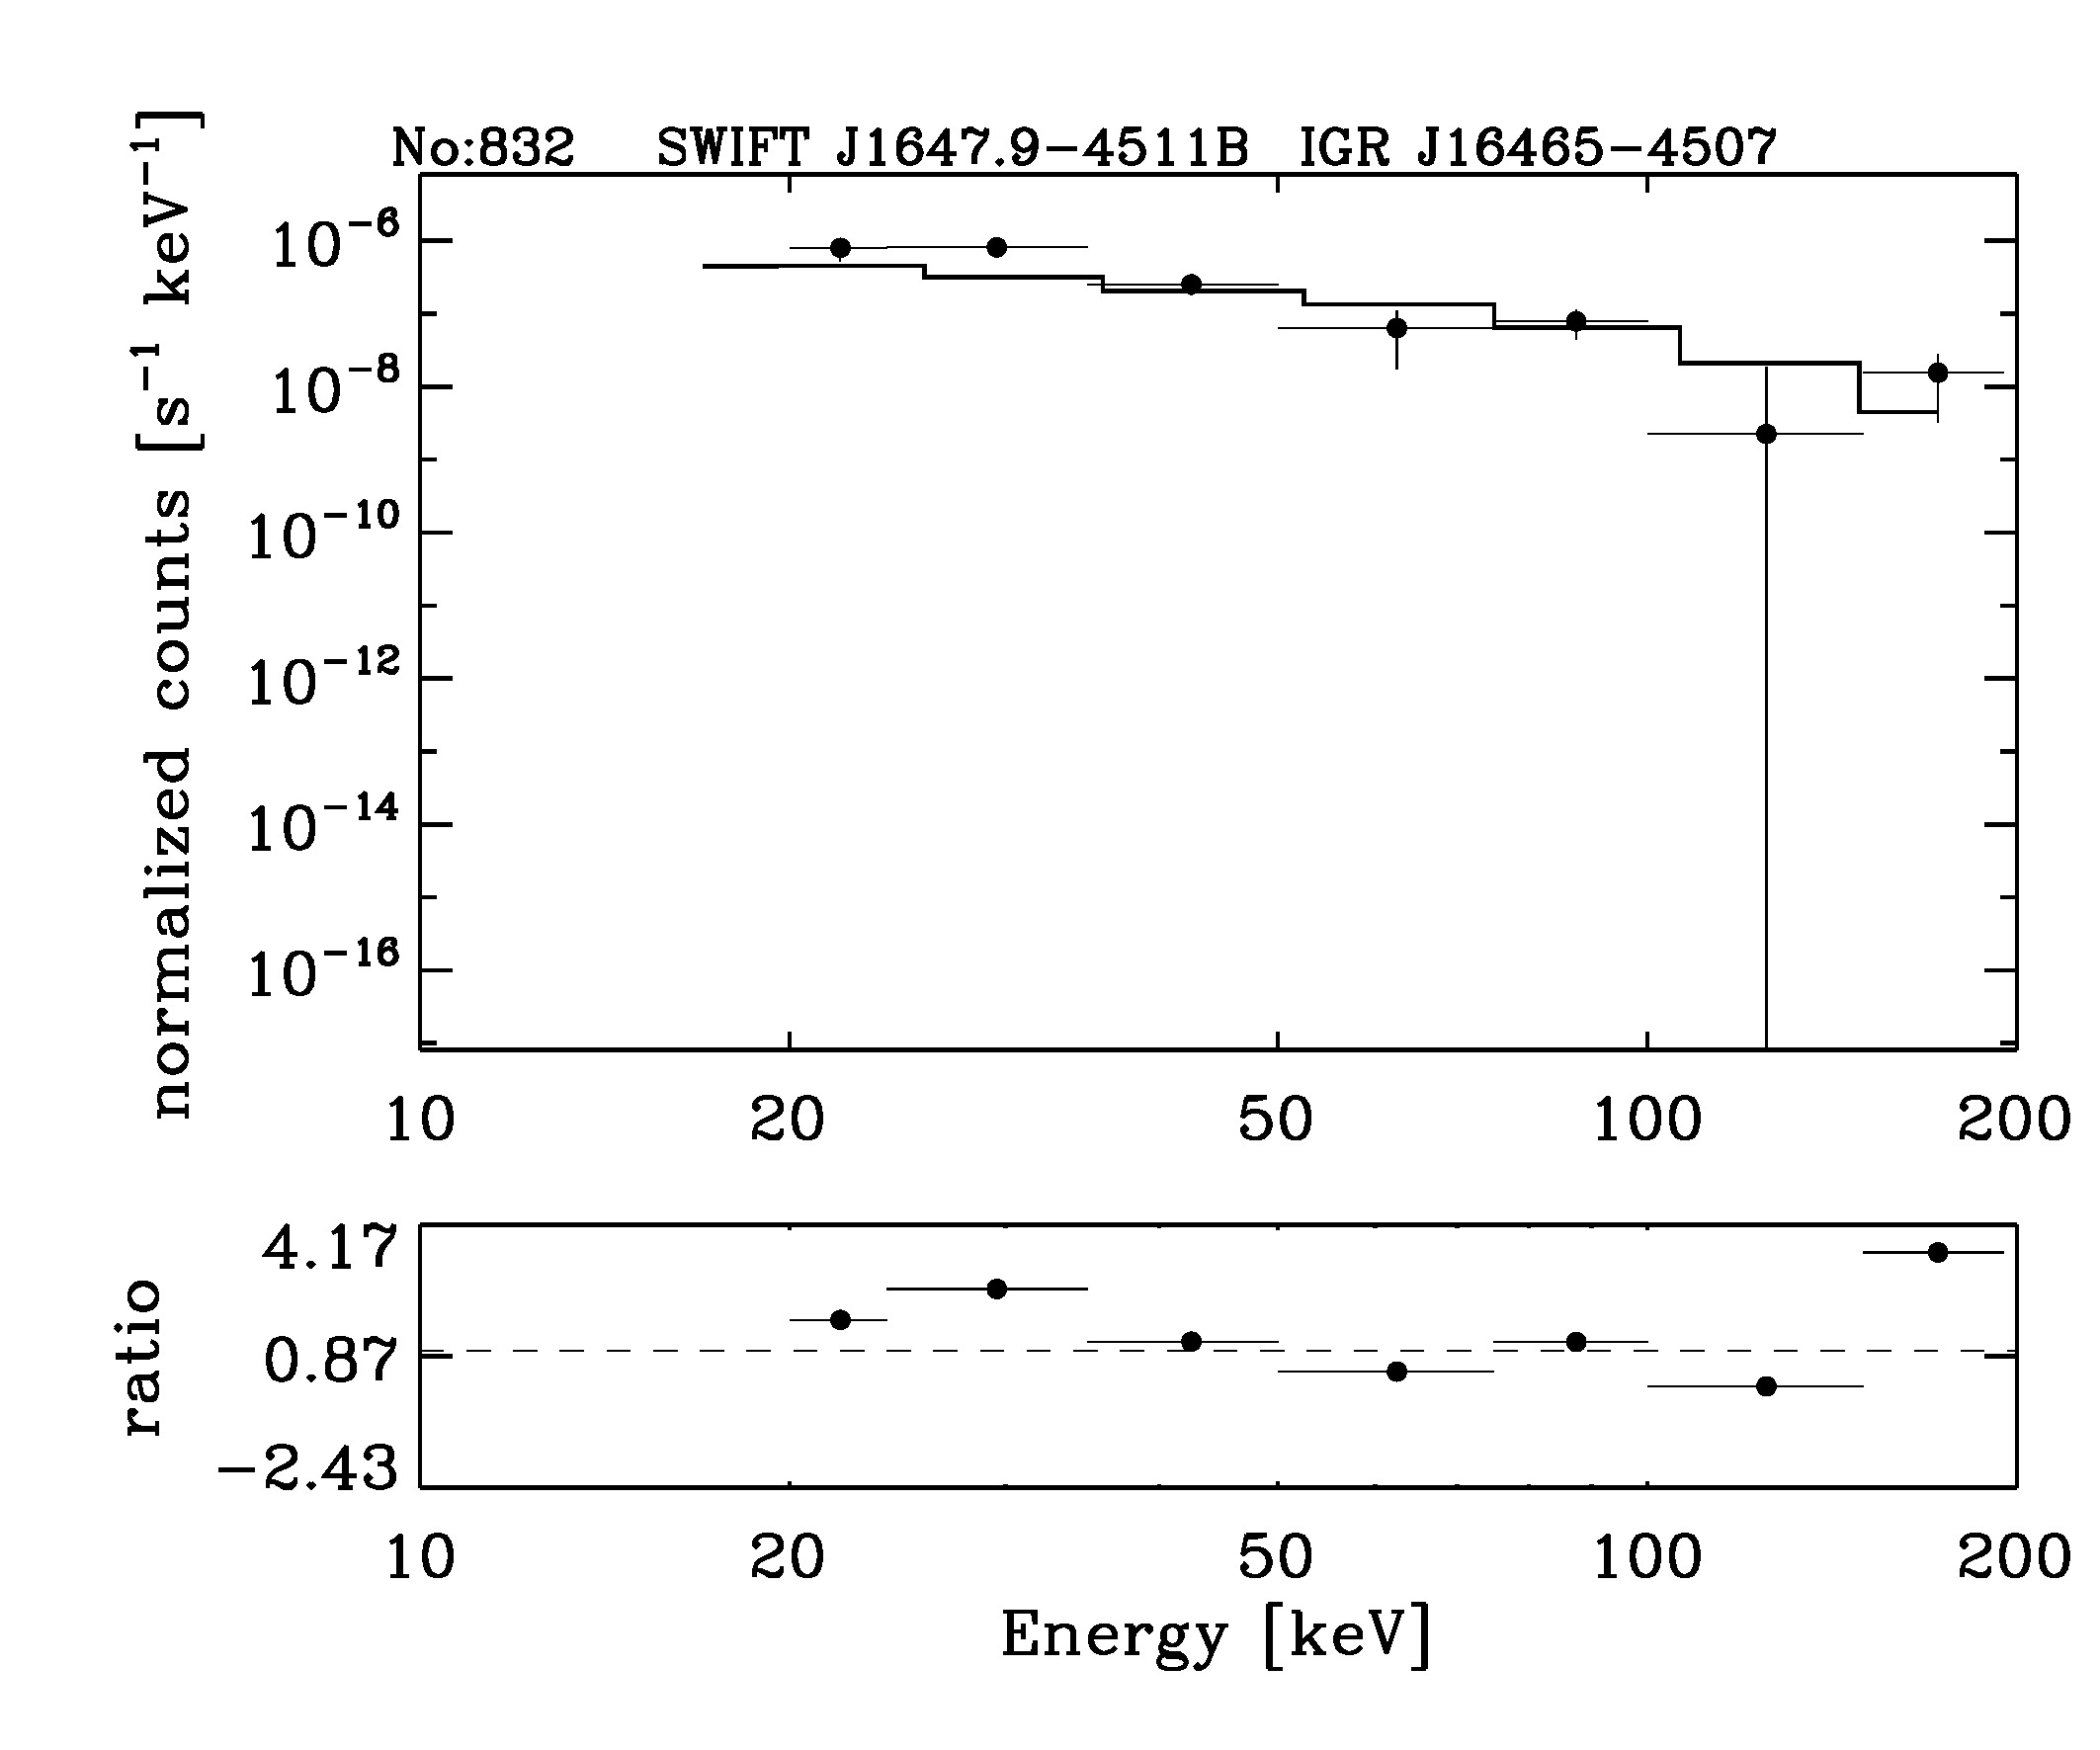 BAT Spectrum for SWIFT J1647.9-4511B